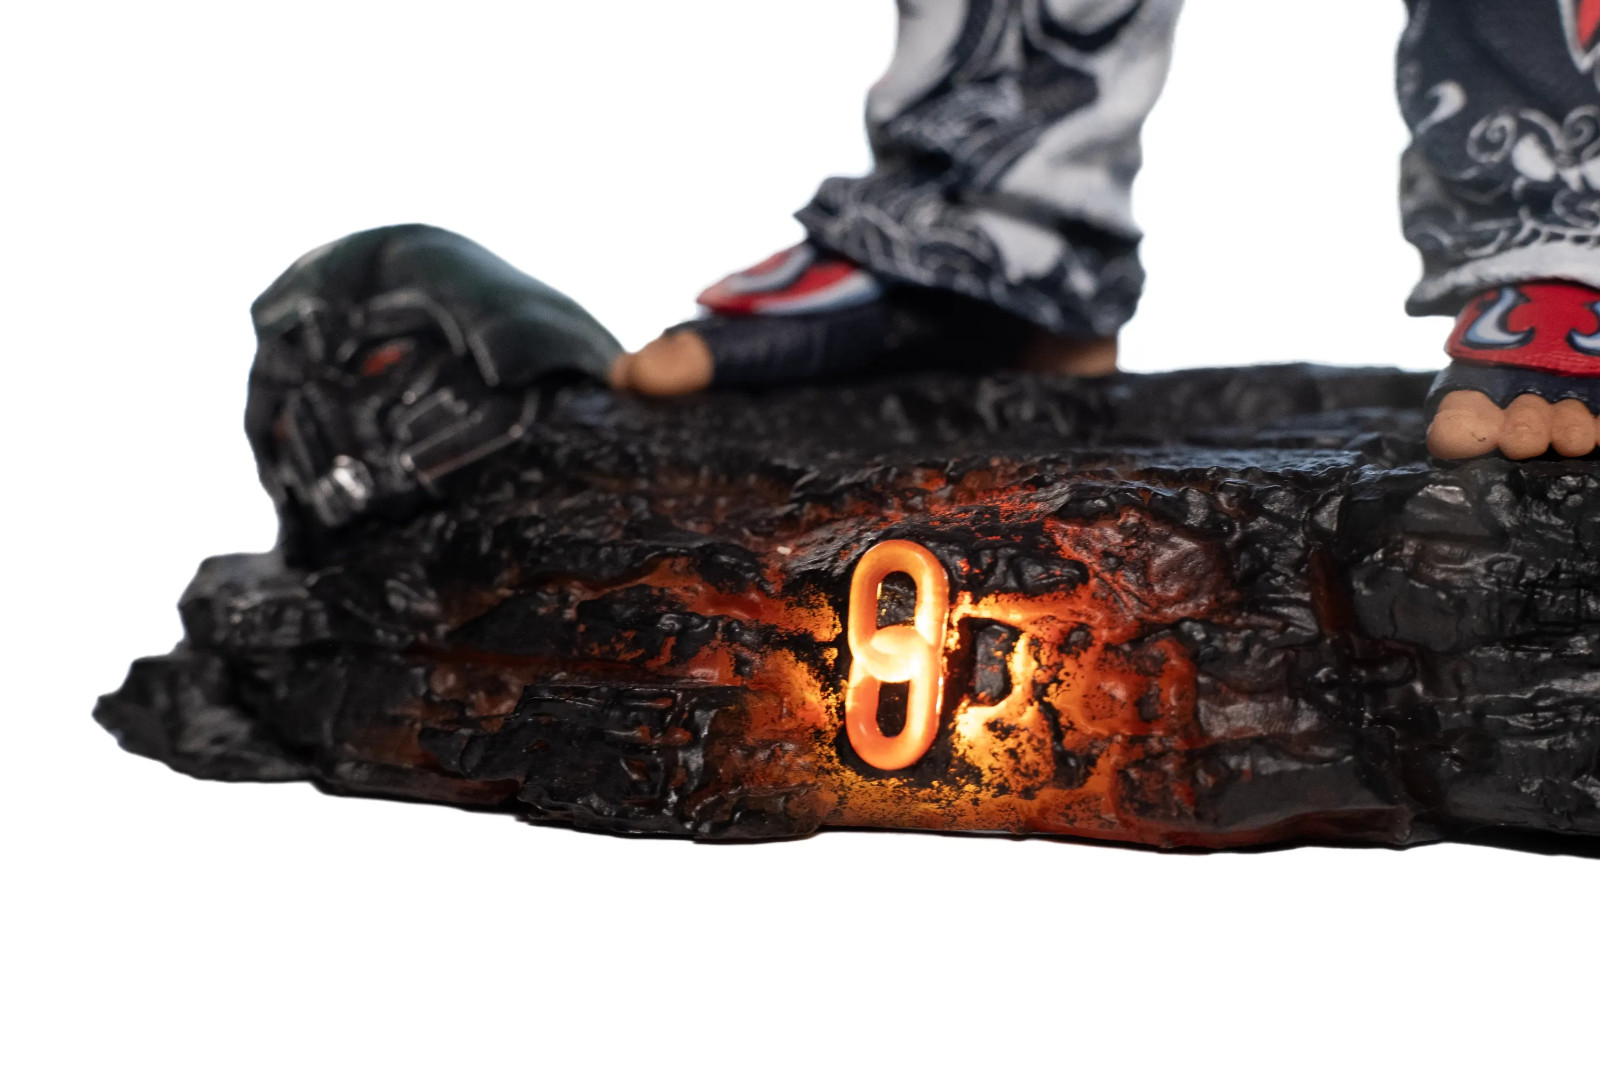 《铁拳8》高级典藏版预告 明年1月26日发售